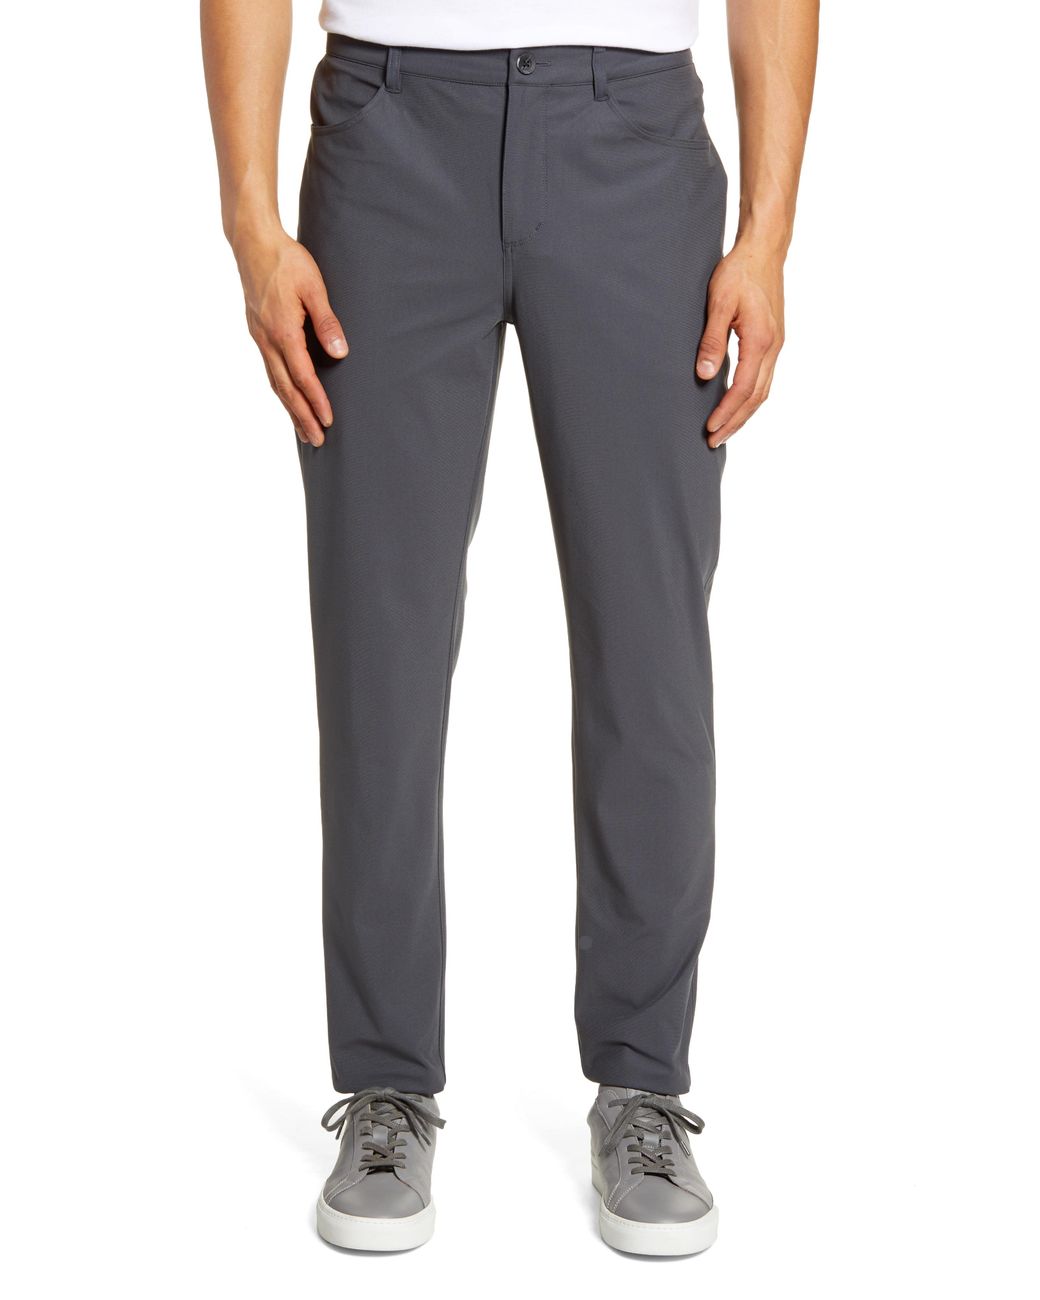 Vuori Meta Pants in Charcoal (Gray) for Men - Lyst